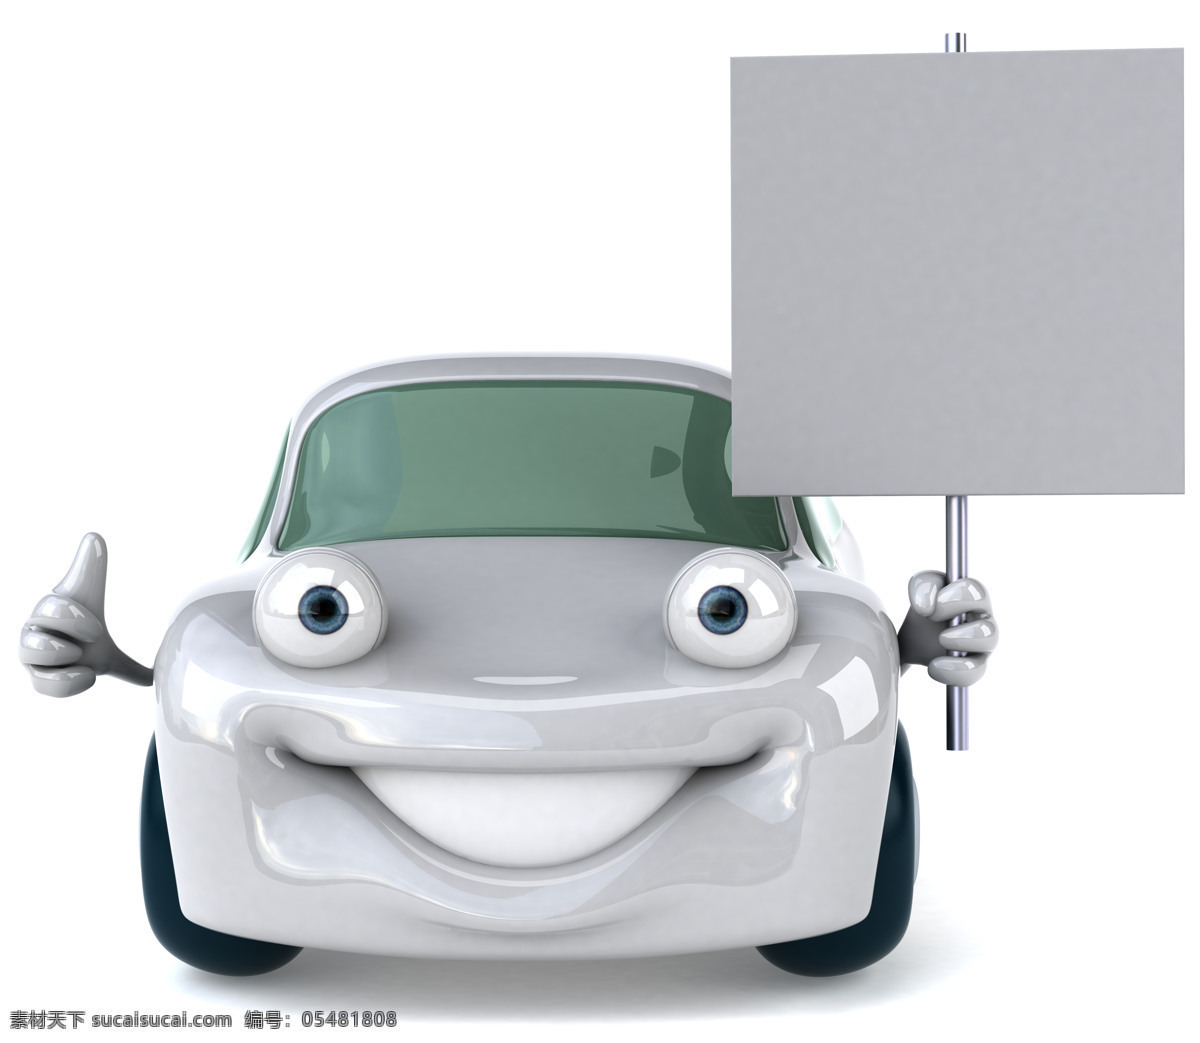 3d 3d设计 白板 高清图片 广告牌 卡通 空白 汽修 小汽车 设计素材 模板下载 小车 修理 维修 笑脸 矢量图